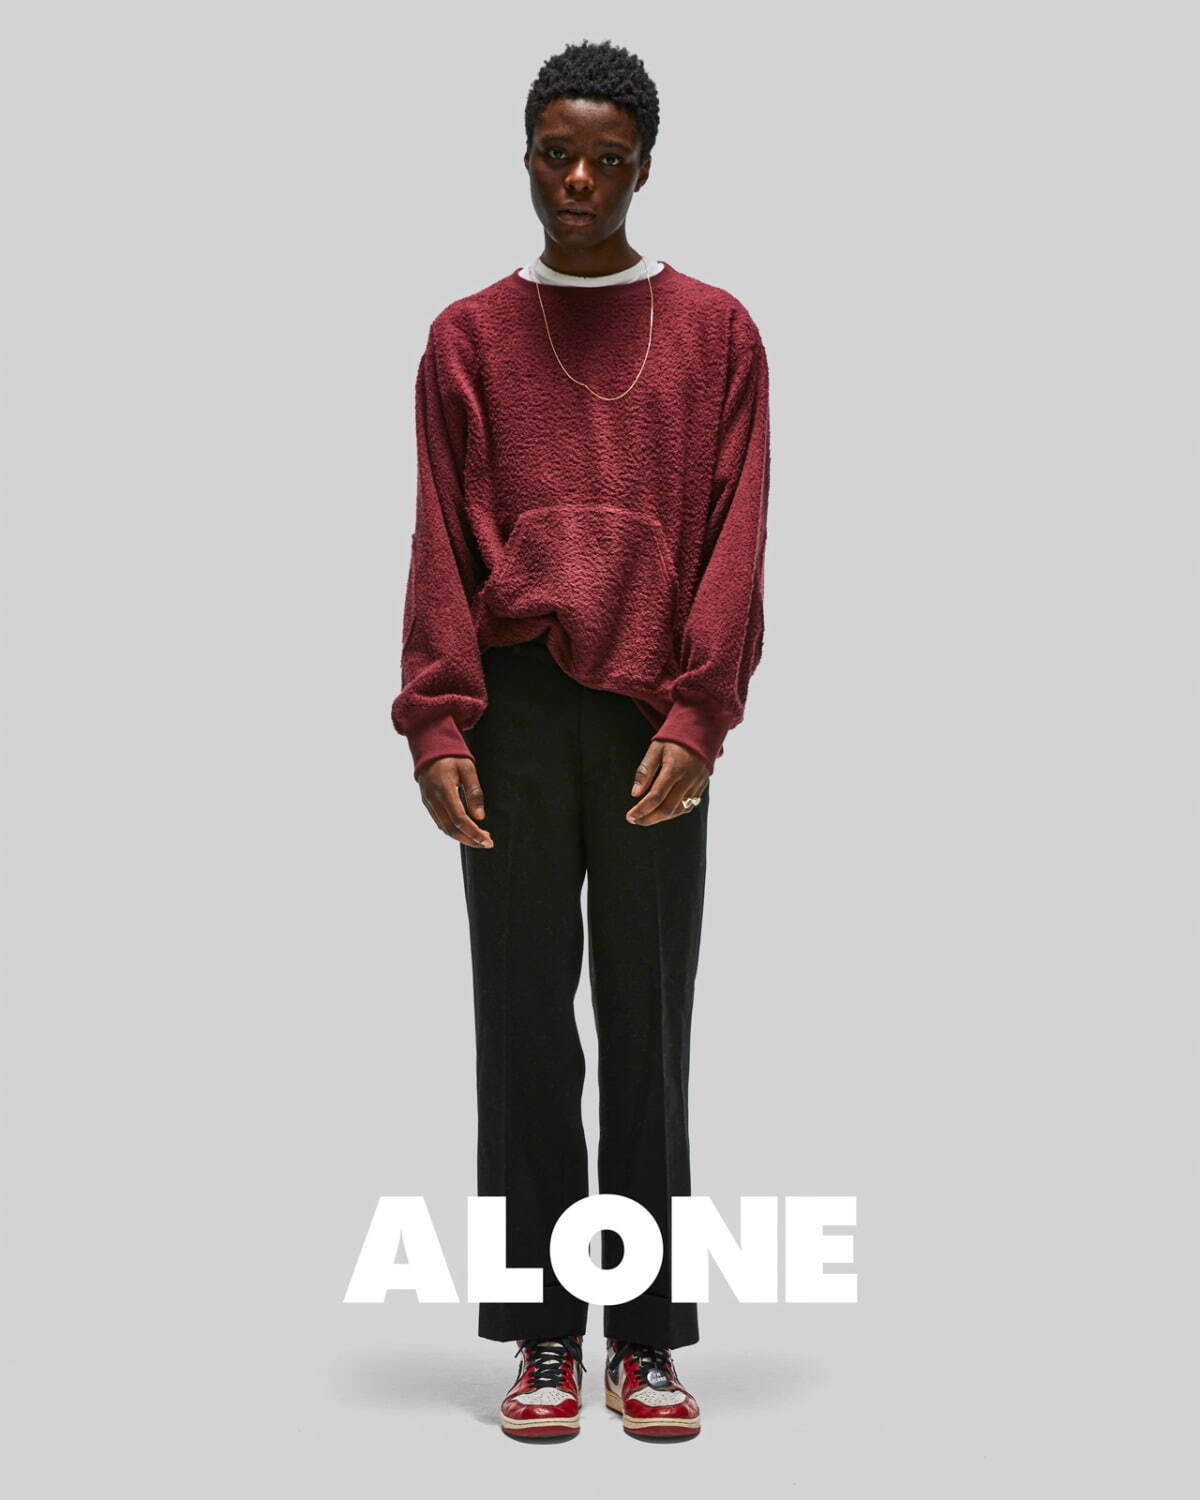 アローン(ALONE) 2021-22年秋冬メンズコレクション  - 写真13